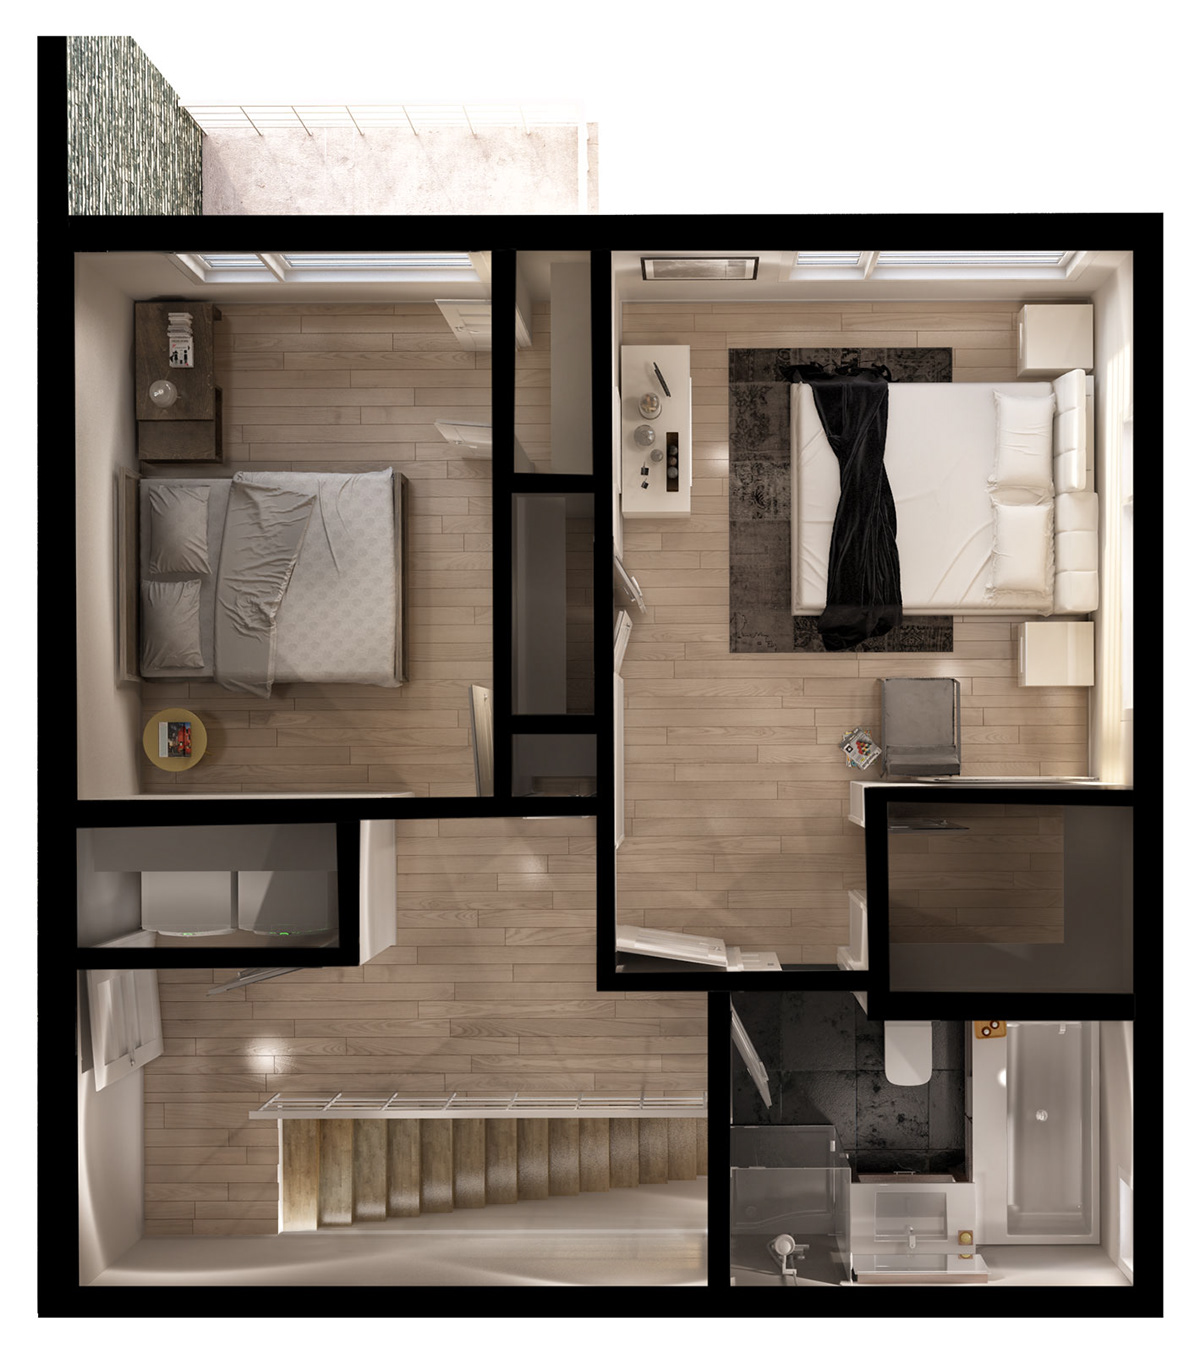 3D rendus rendering vray 3dsmax 3dmax zone sismique carl plante habitations malie Intérieur 3D 3D Interior cuisine salon triplex appartement